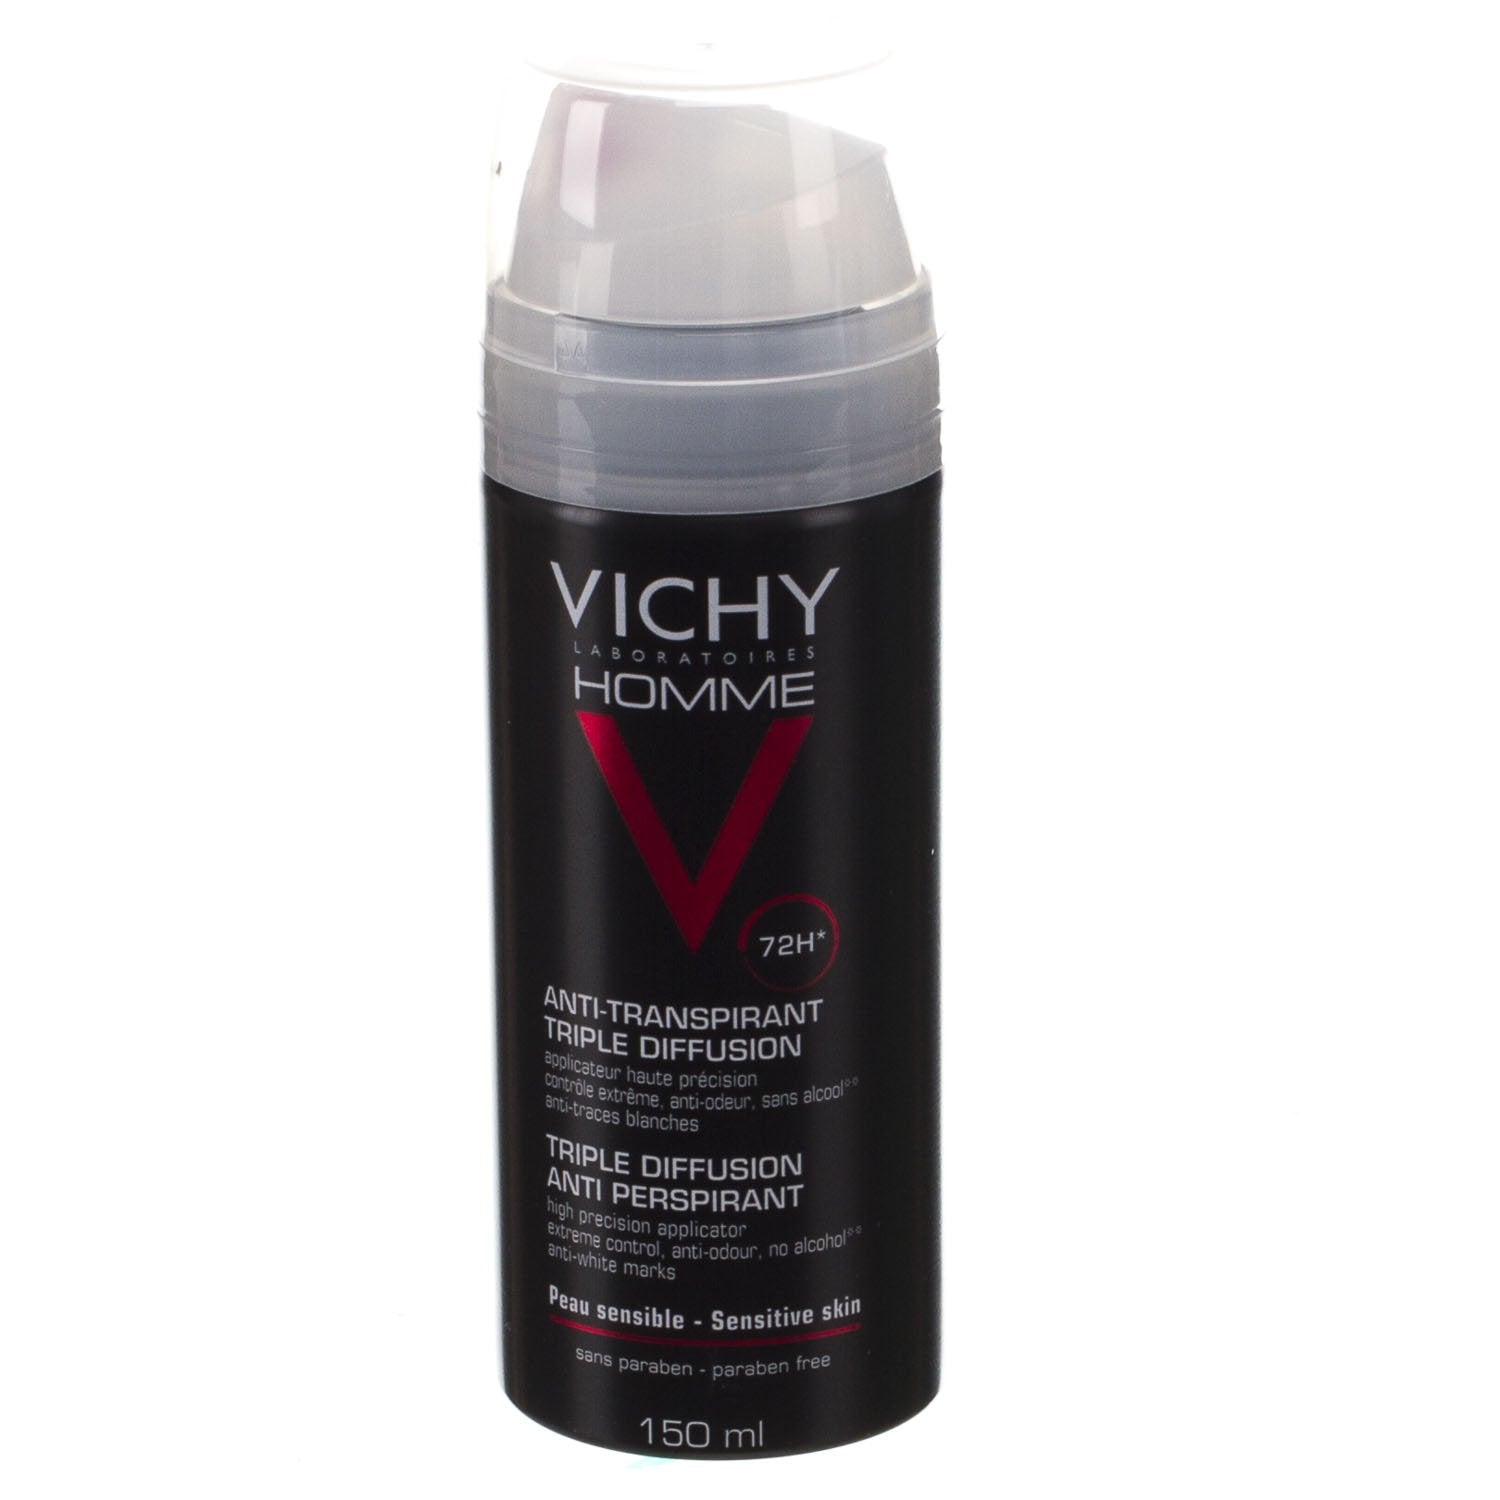 Vichy Homme Deo Tri-spray 72h Duo 2x150ml